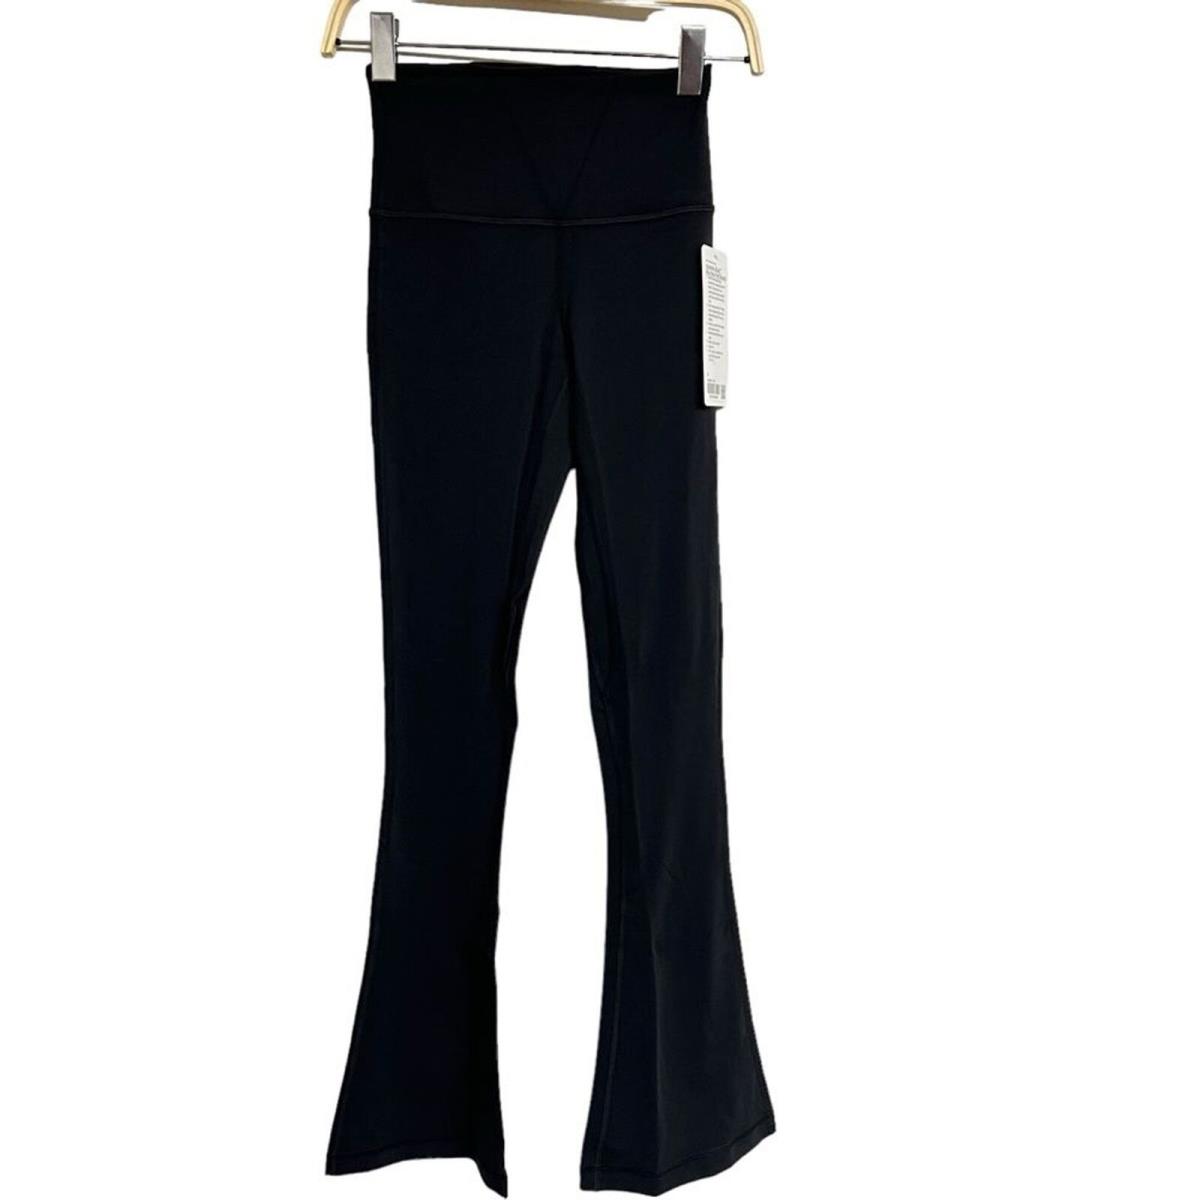 Lululemon Align Mini Flare Pants Regular Length in Black